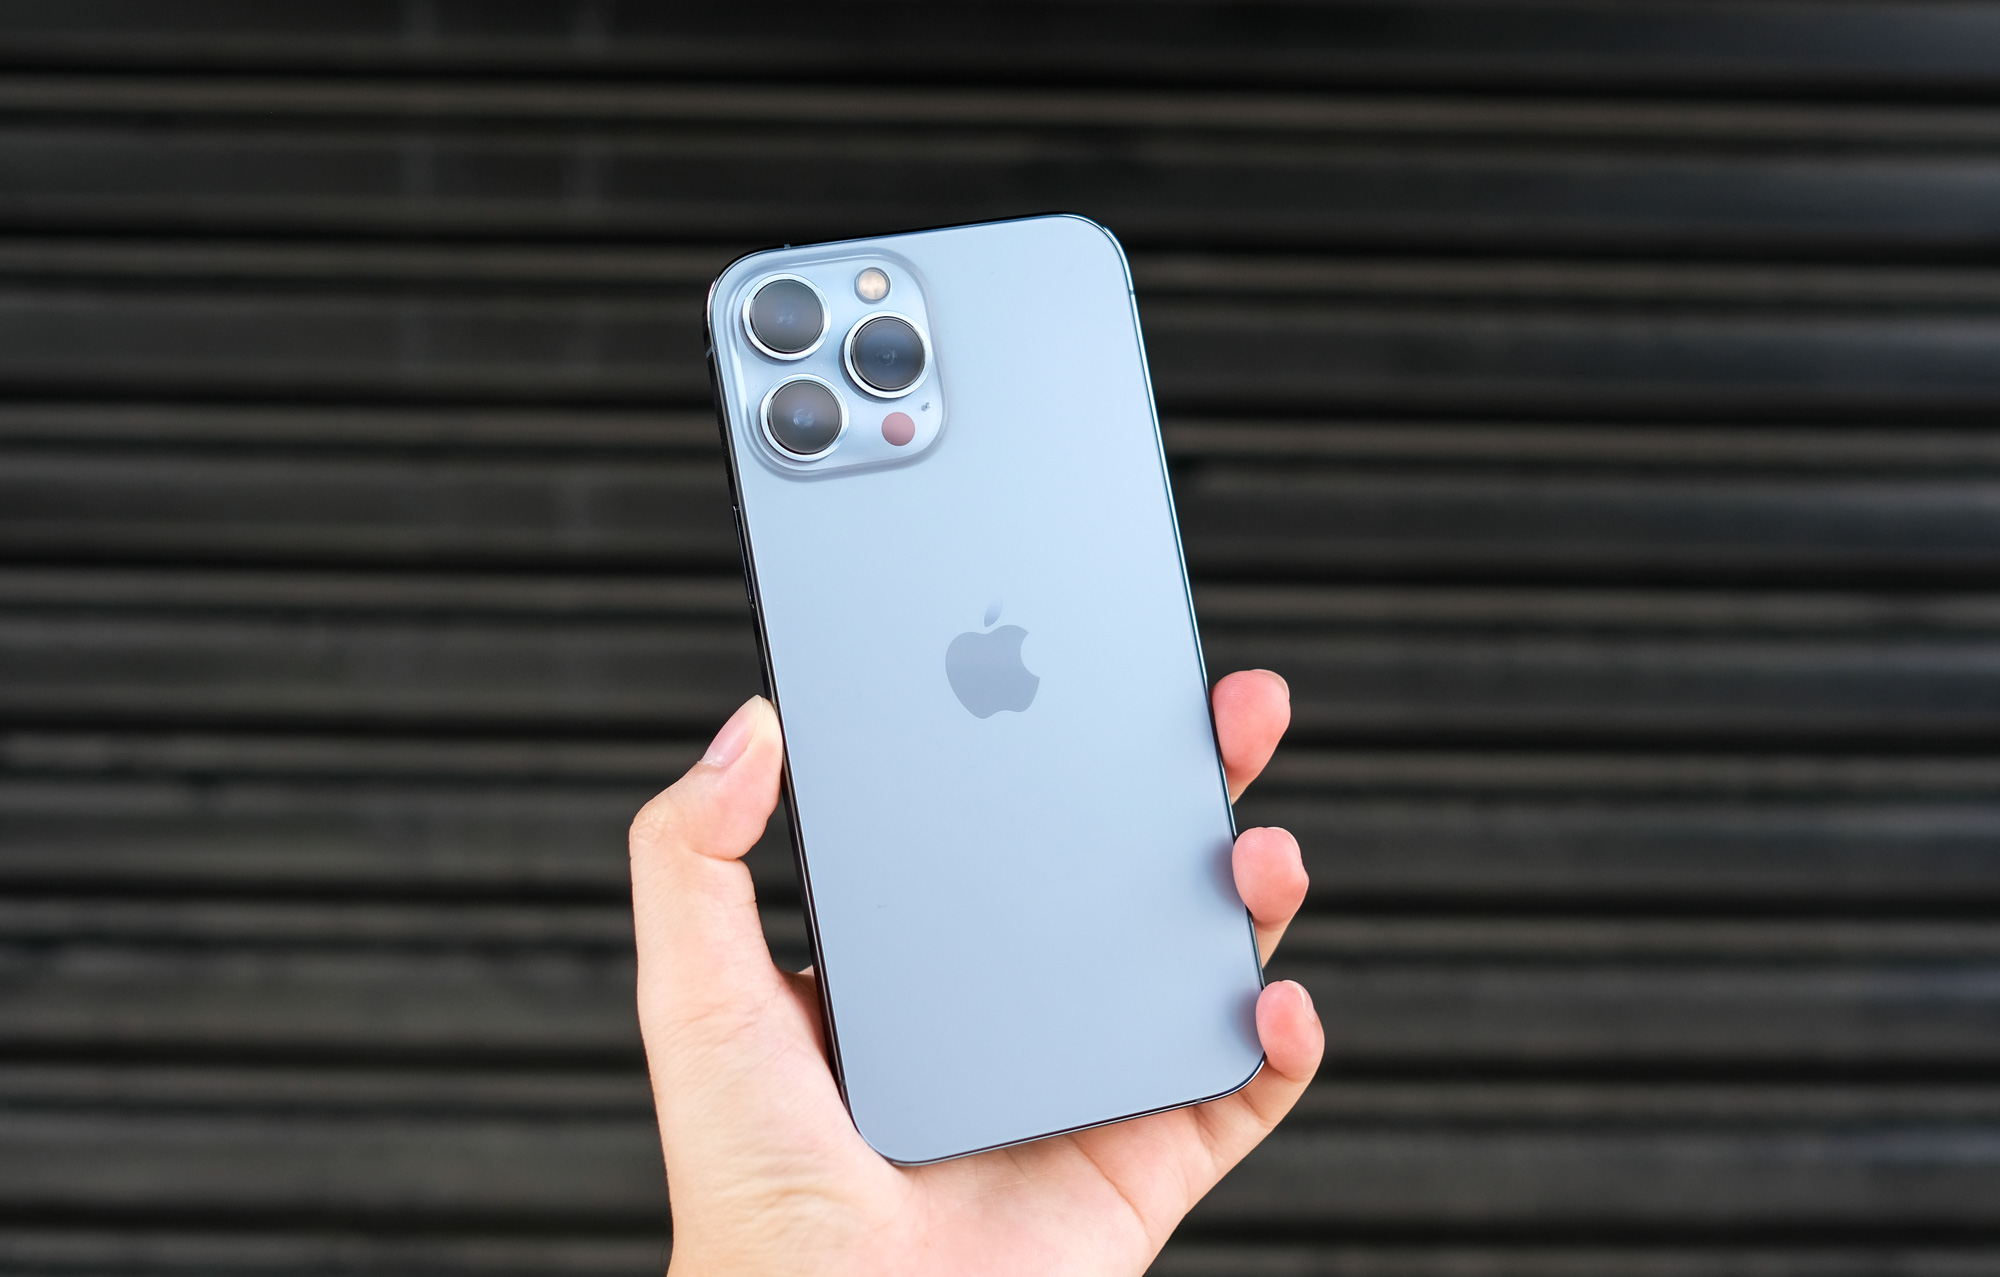 Bạn là một fan hâm mộ thương hiệu Apple và đang tò mò về iPhone 13 Pro Max? Hãy cùng đón xem đánh giá nhanh về sản phẩm này để biết thêm chi tiết về những cải tiến vượt trội của đời iPhone mới nhất này.